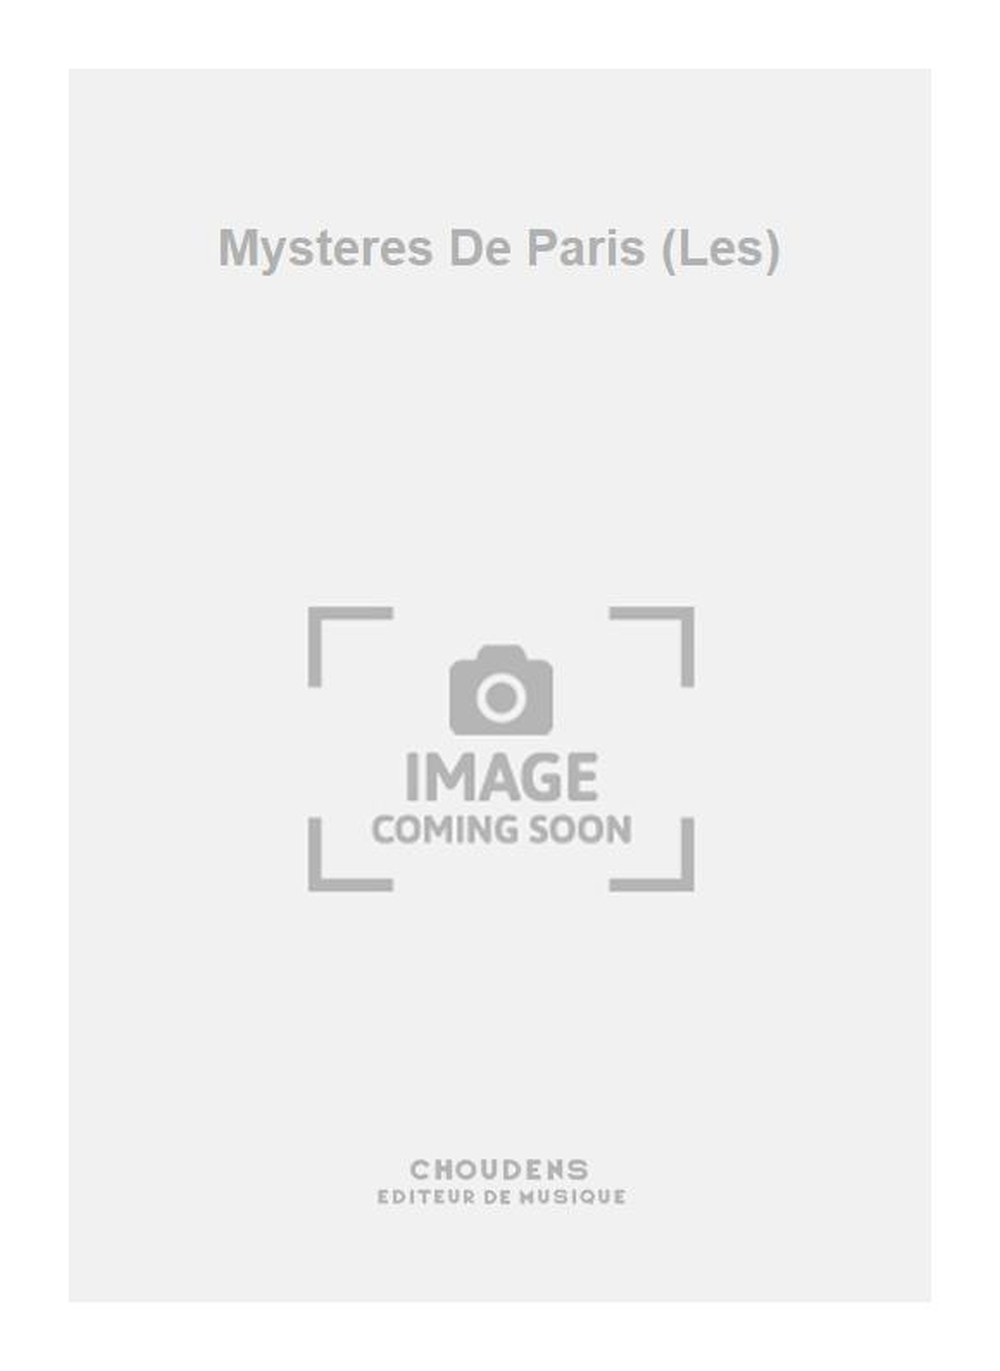 Auric: Mysteres De Paris (Les)